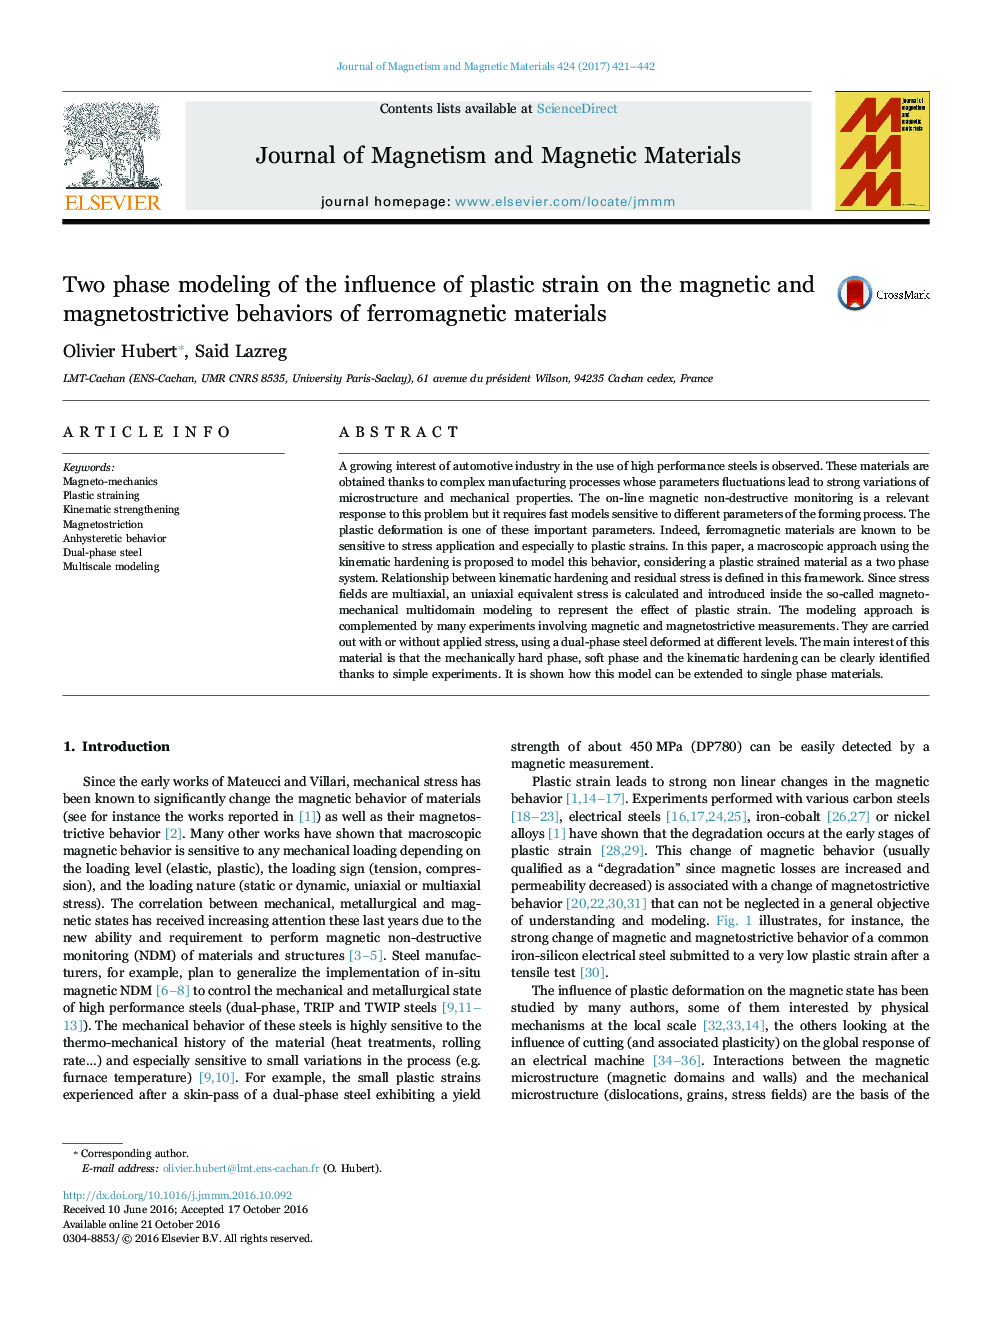 مدل سازی دو مرحله ای از تأثیر فشار پلاستیک بر رفتار مغناطیسی و مغناطیس سنجی مواد فرومغناطیسی 